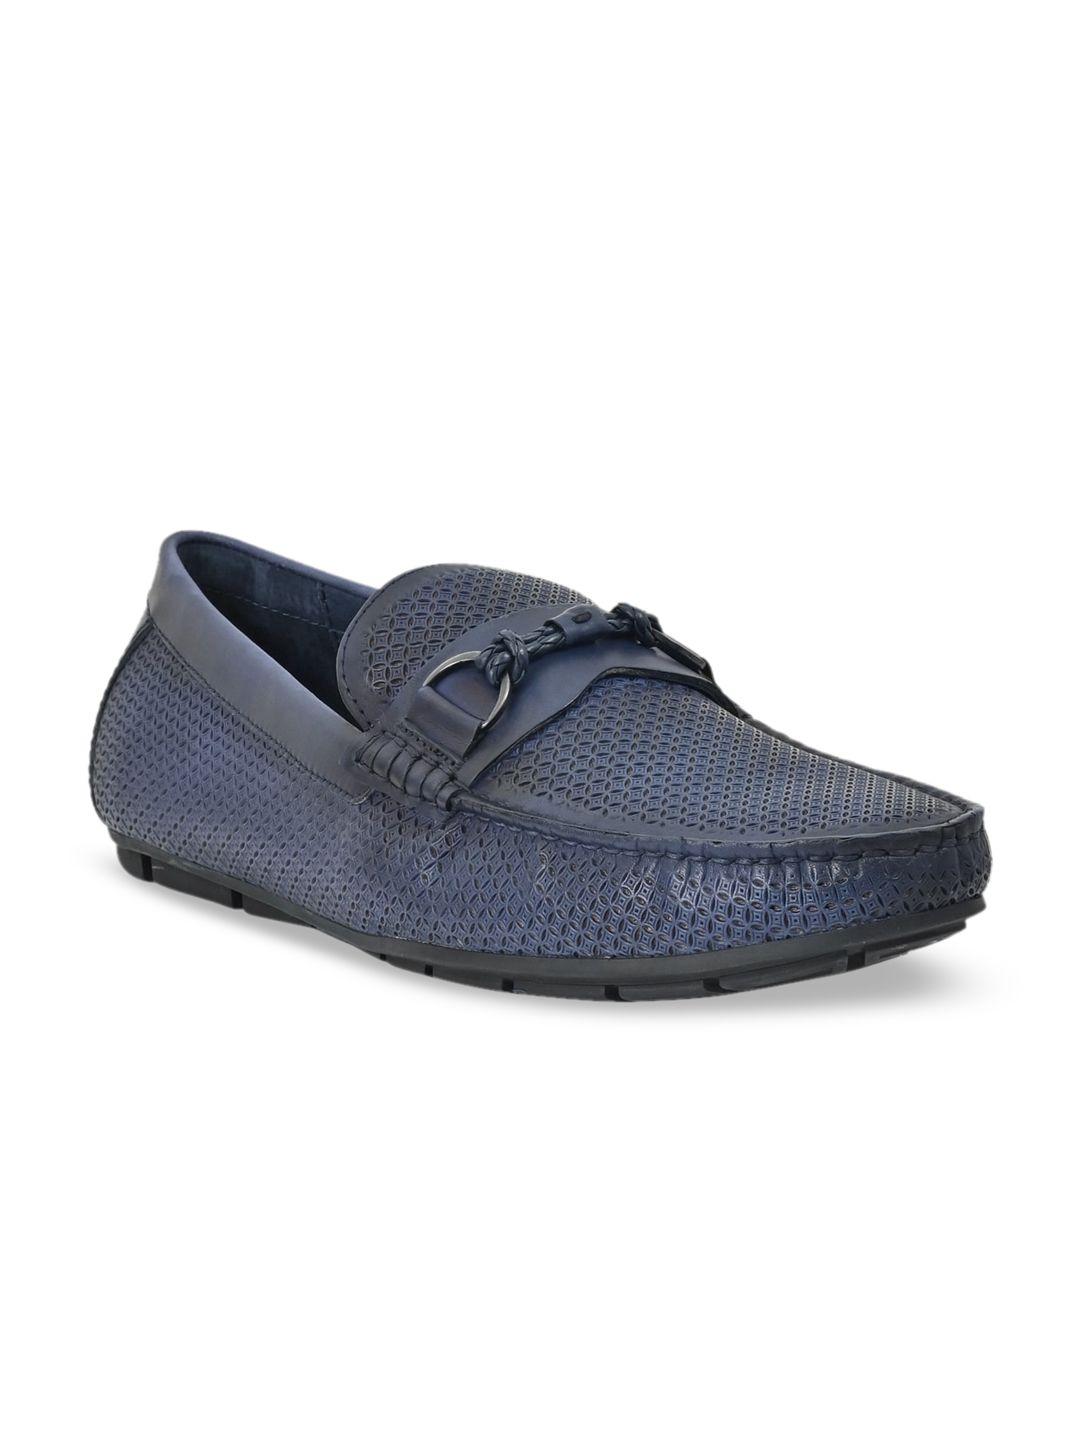 cobblerz men navy blue textured suede loafers